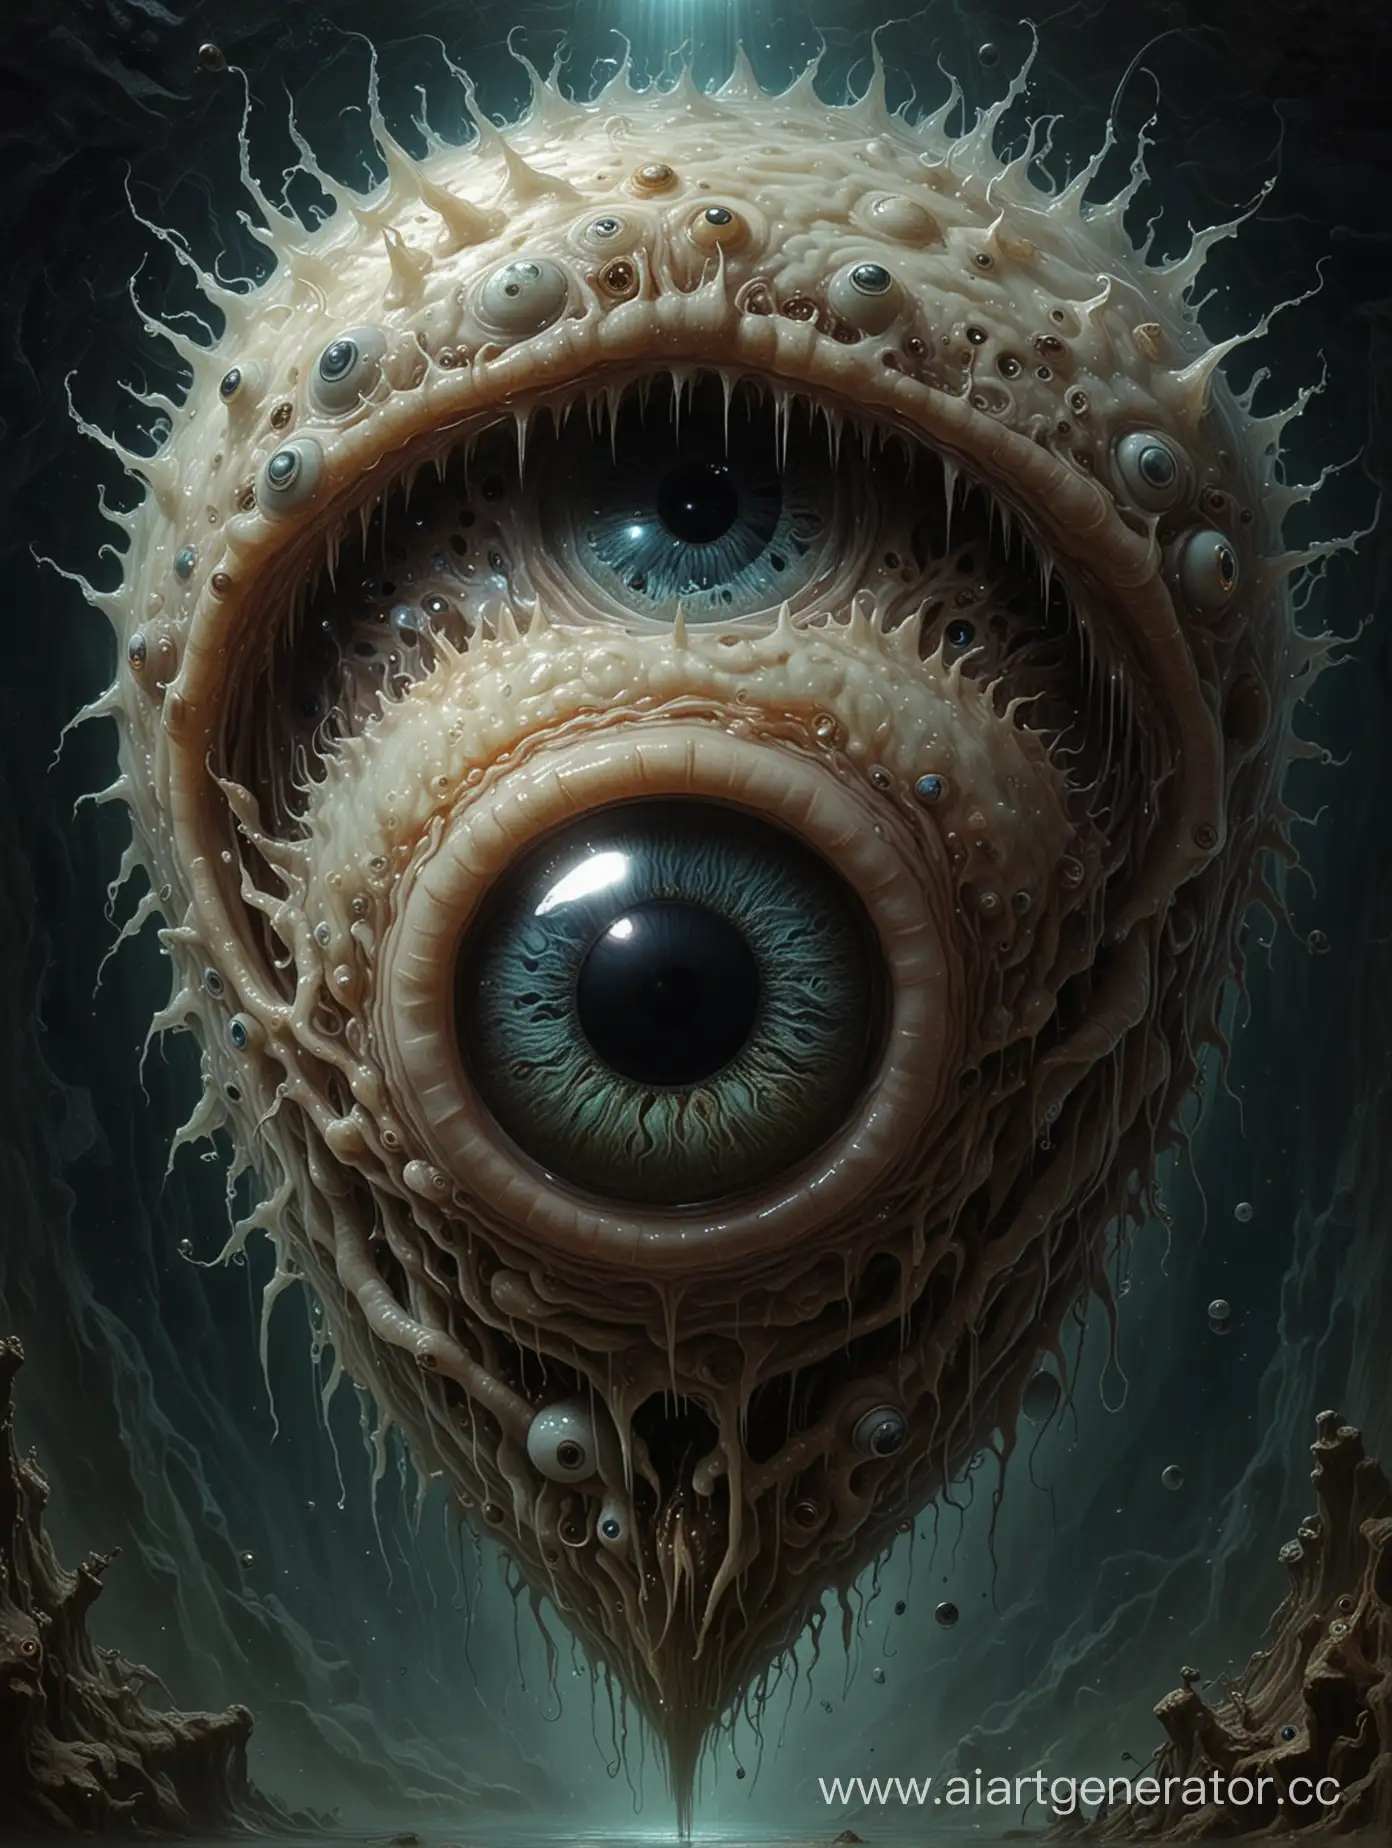 у бехолдера  находящегося под влиянием Бездны, сложные глаза, и он выглядит как плавающая циклопическая голова мухи